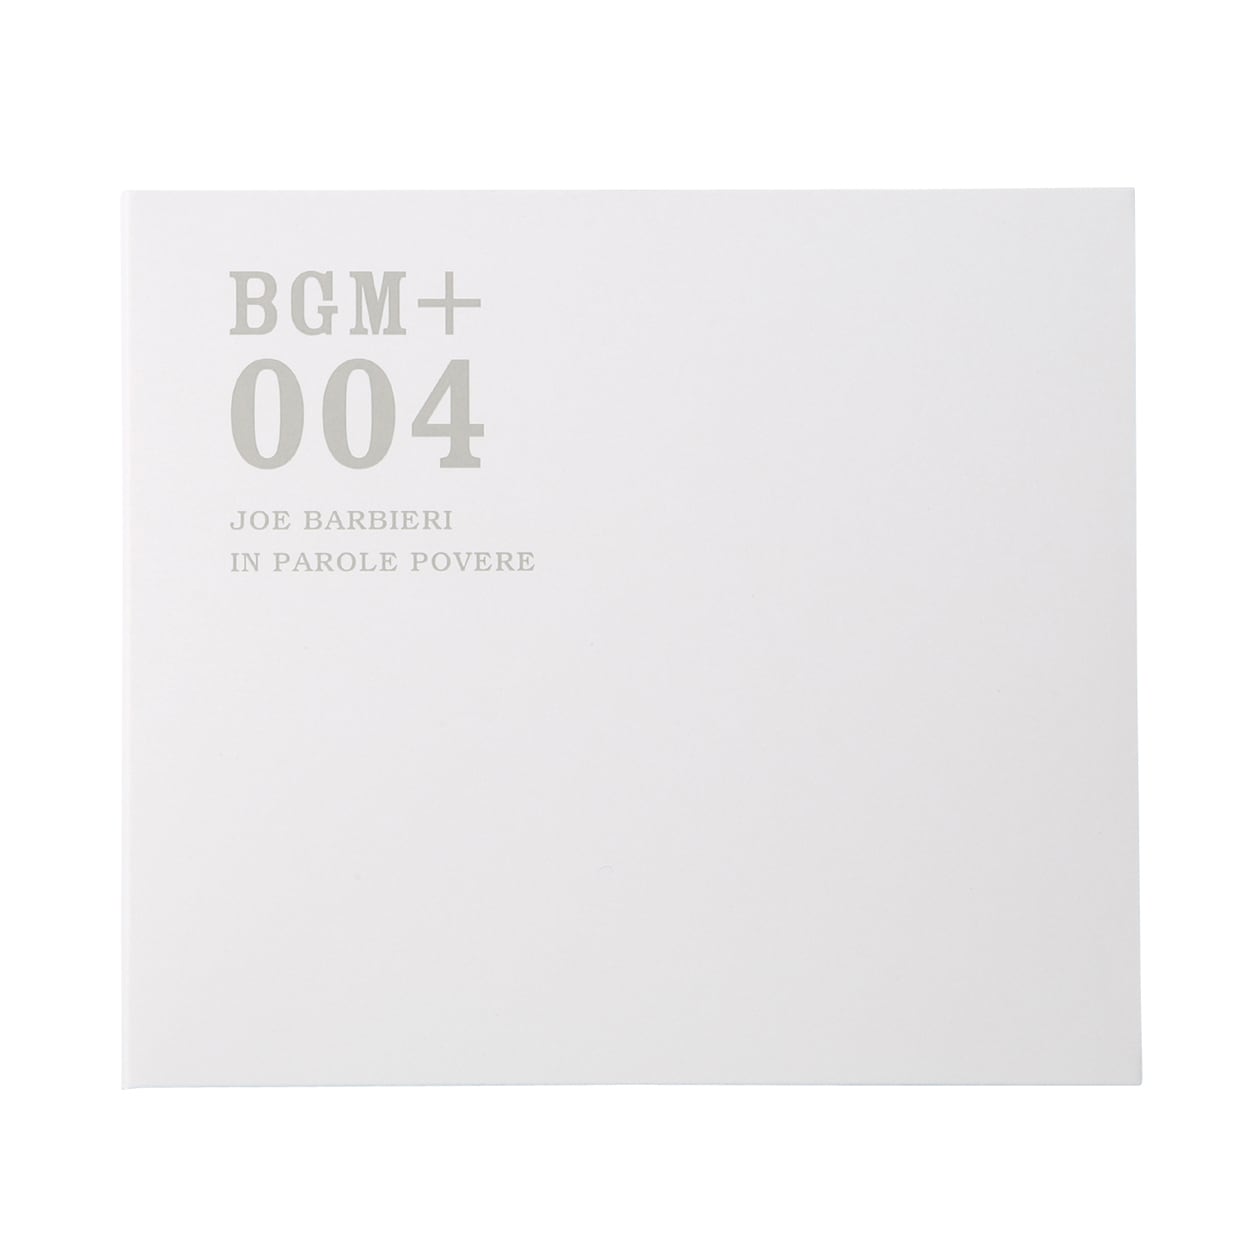 무인양품 일본 CD 음악 BGM +004 JOE BARBIERI